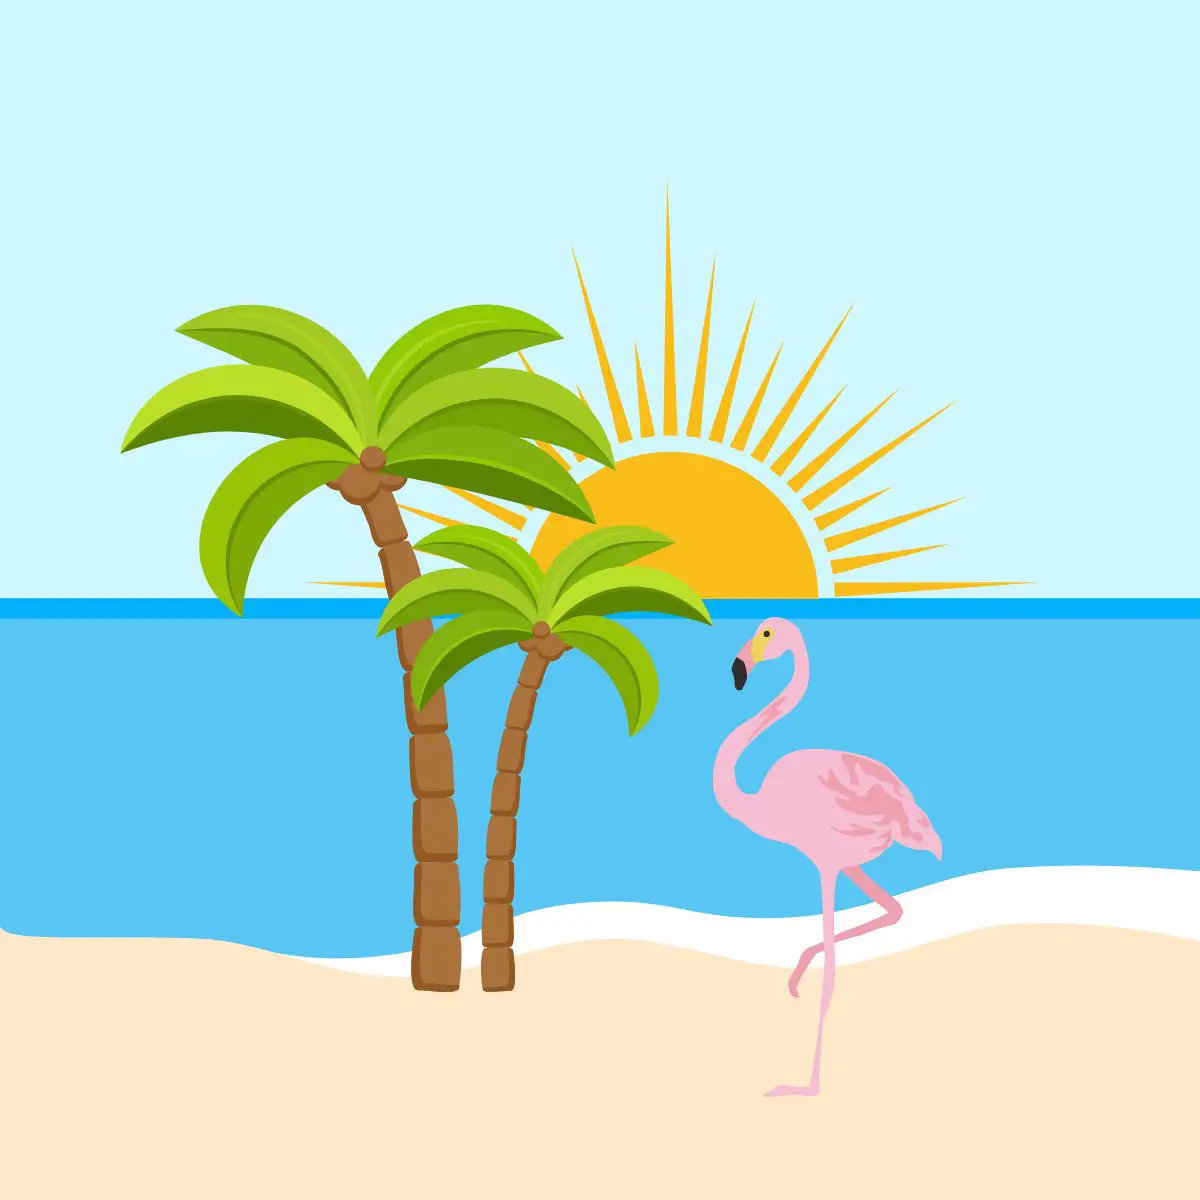 Ein gezeichnetes Bild mit Sandstrand, Palme, Sonne und Flamingo.